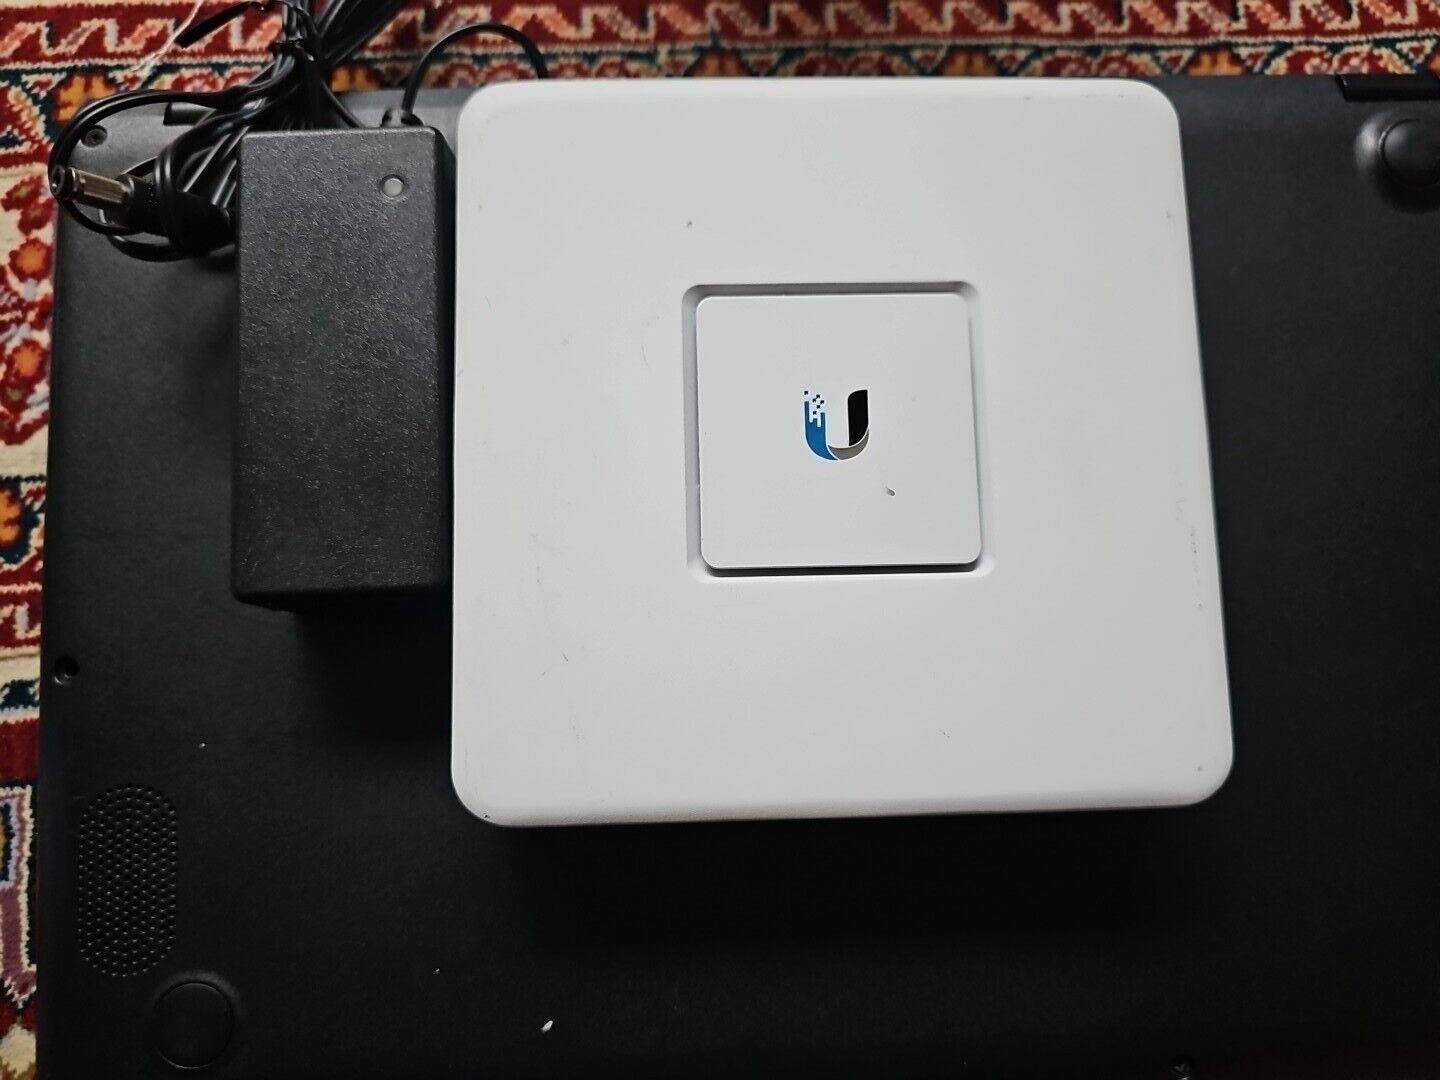 Ubiquiti Networks UniFi Security Gateway 1000Mbps Gigabit (USG)